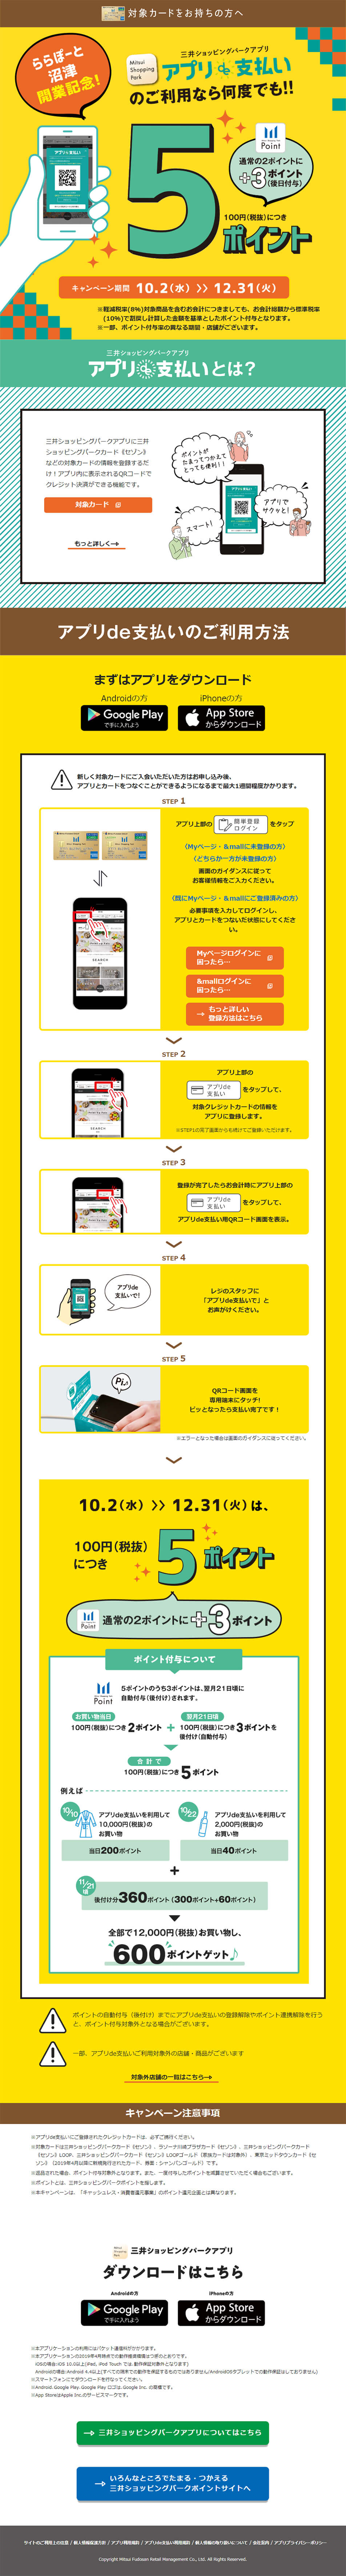 三井ショッピングパークアプリ_pc_1